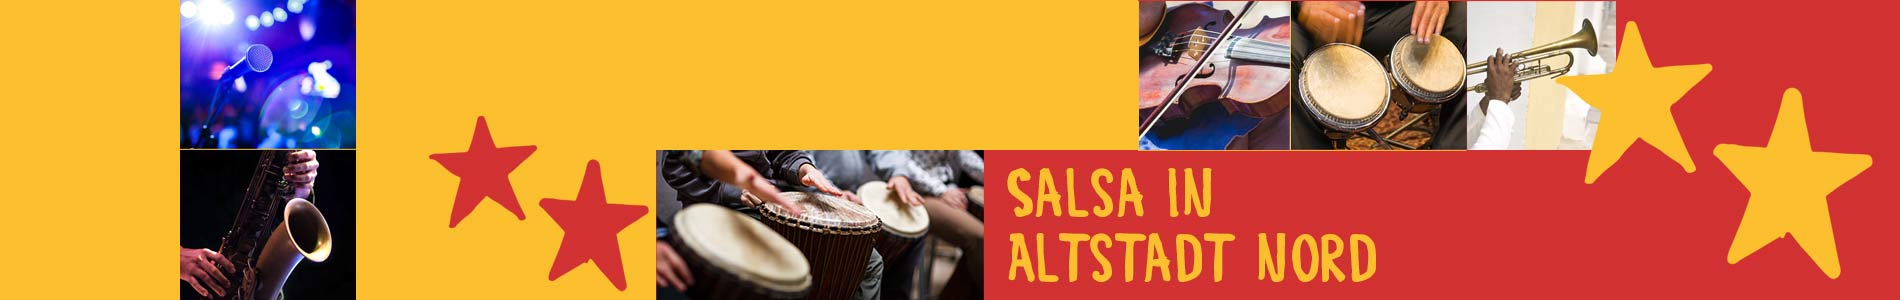 Salsa in Altstadt Nord – Salsa lernen und tanzen, Tanzkurse, Partys, Veranstaltungen